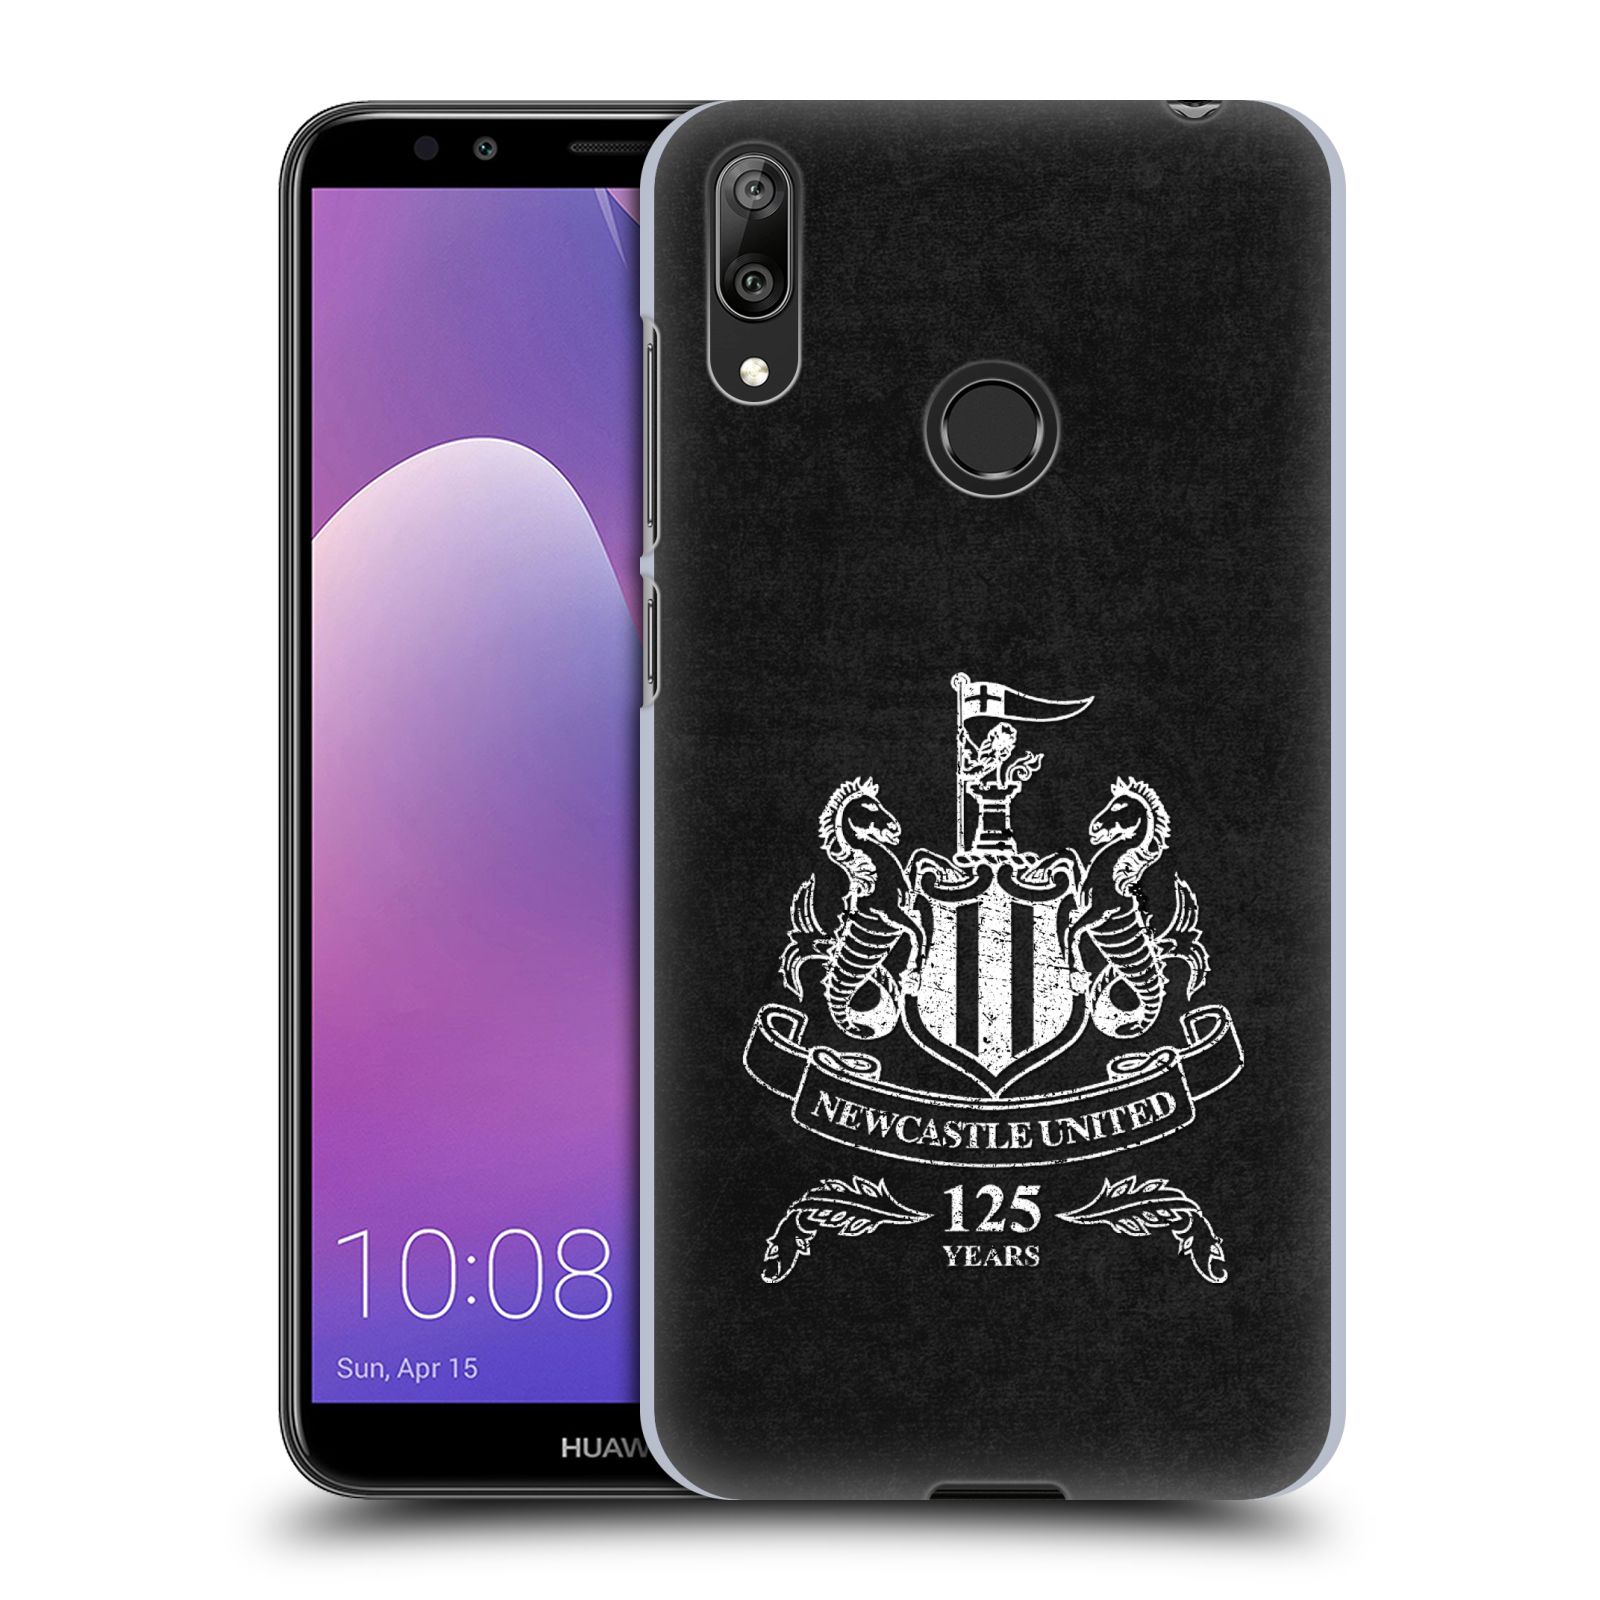 Pouzdro na mobil Huawei Y7 2019 - Head Case - Fotbalový klub Newcastle United FC černá bílá znak